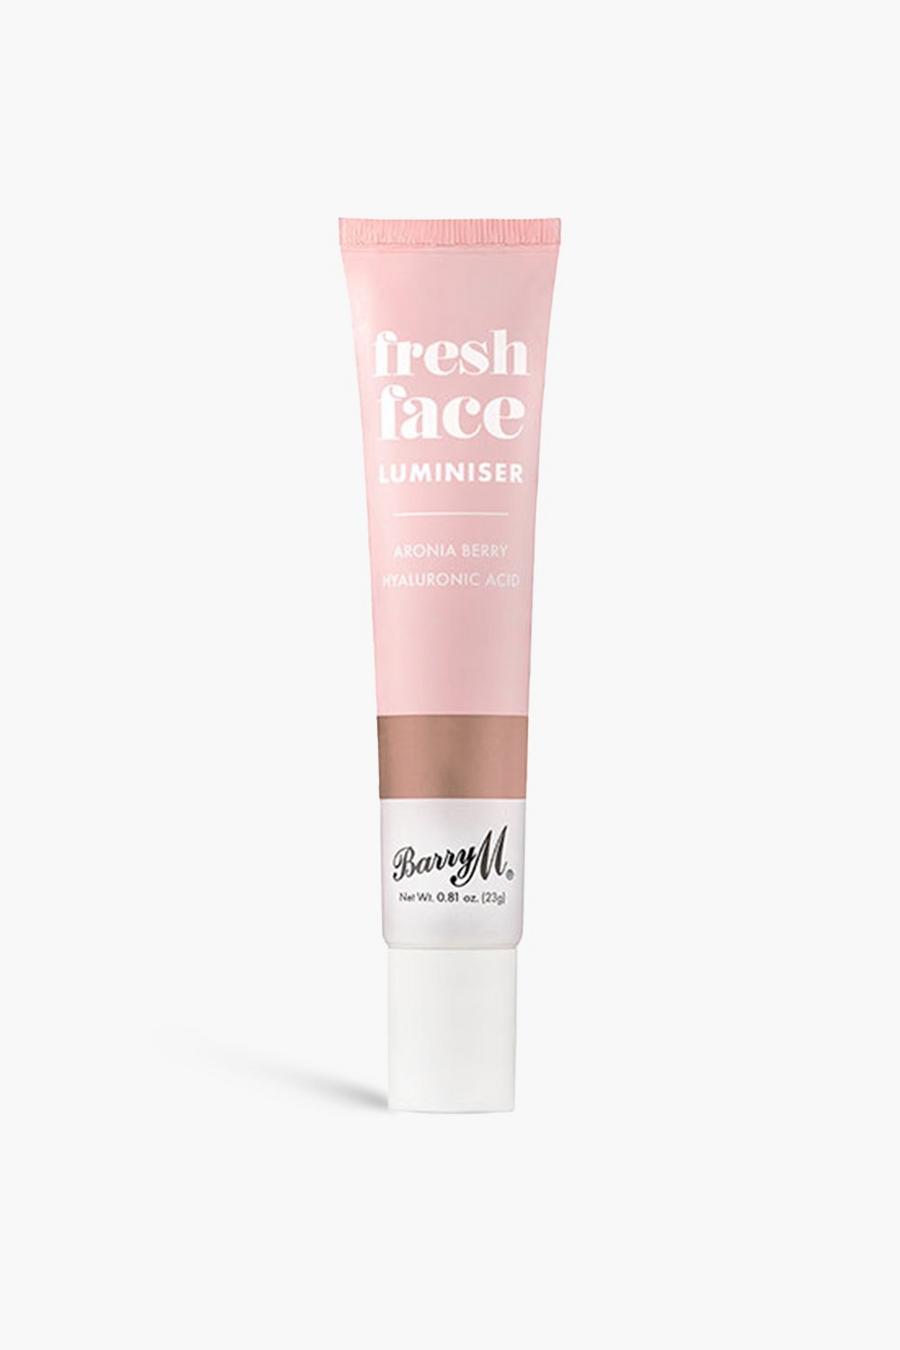 Rose Barry M Fresh Face Luminiser